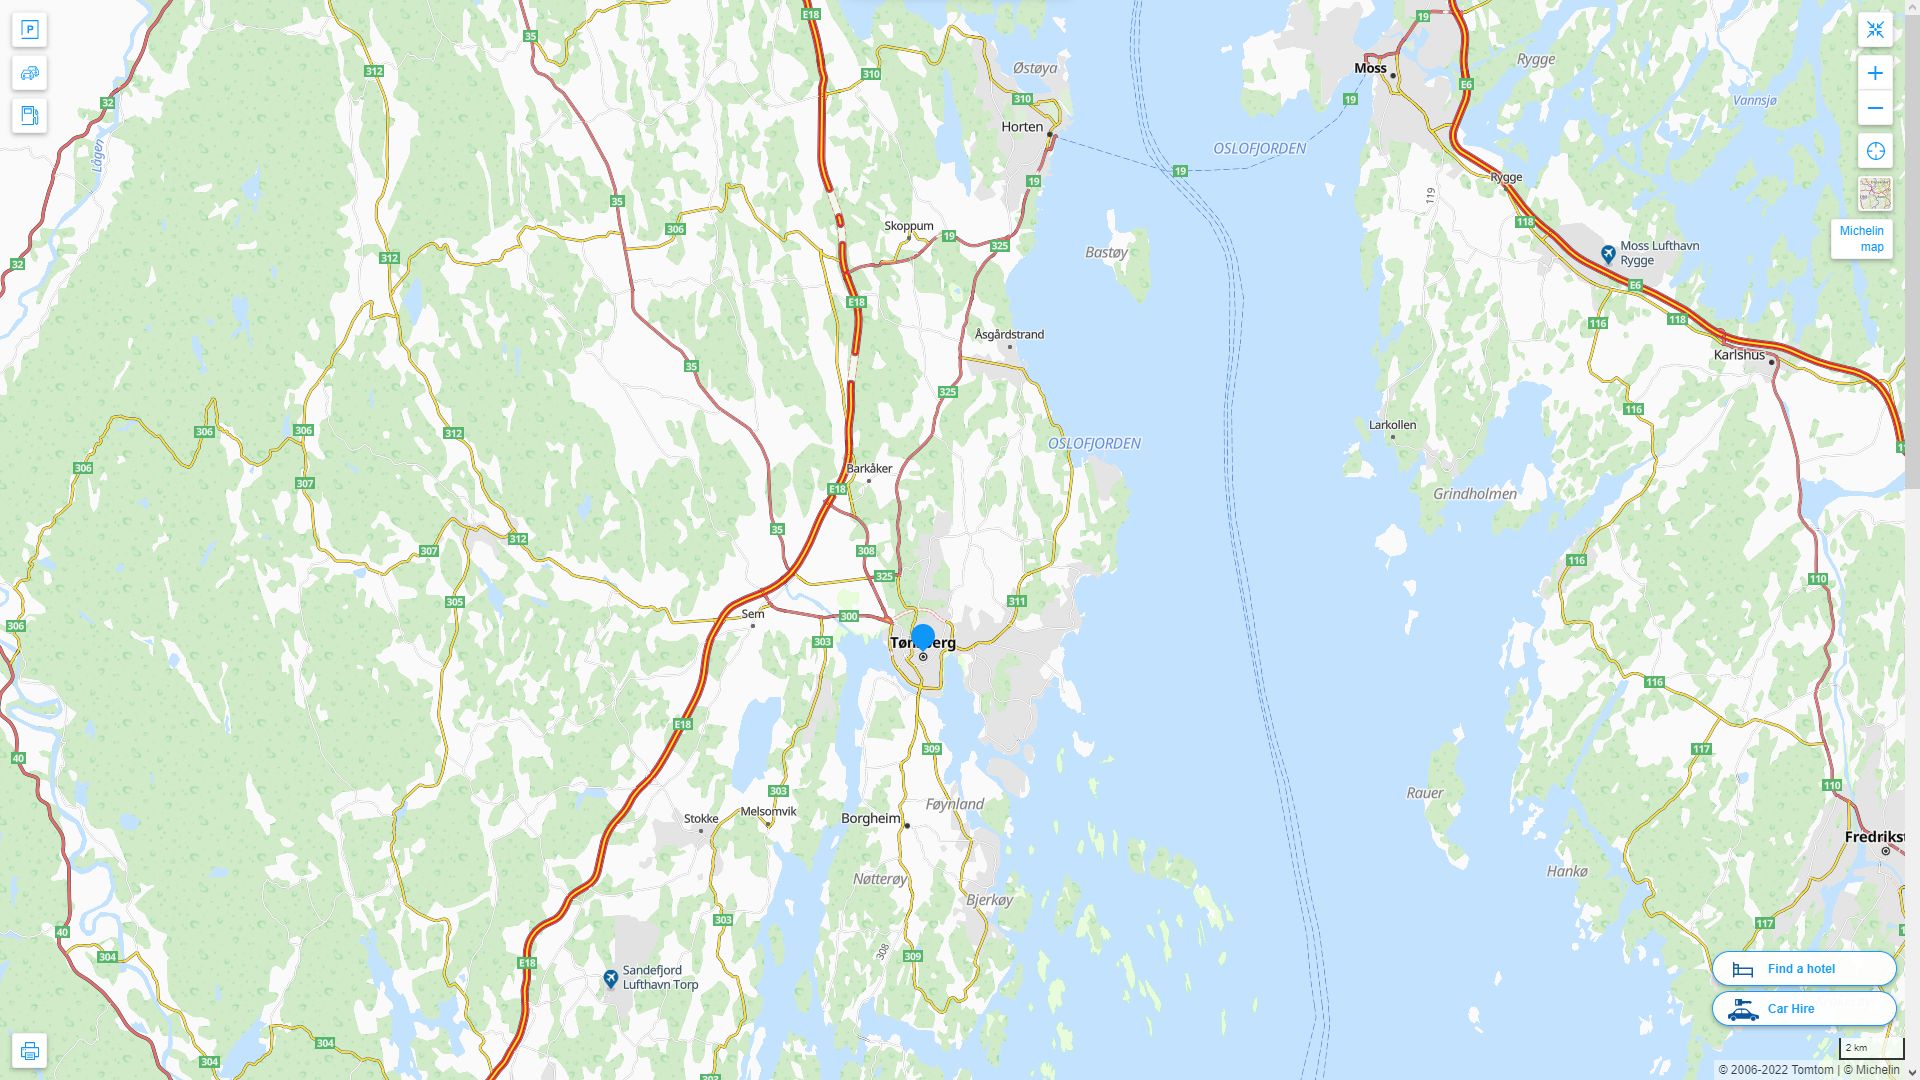 Tonsberg Norvege Autoroute et carte routiere